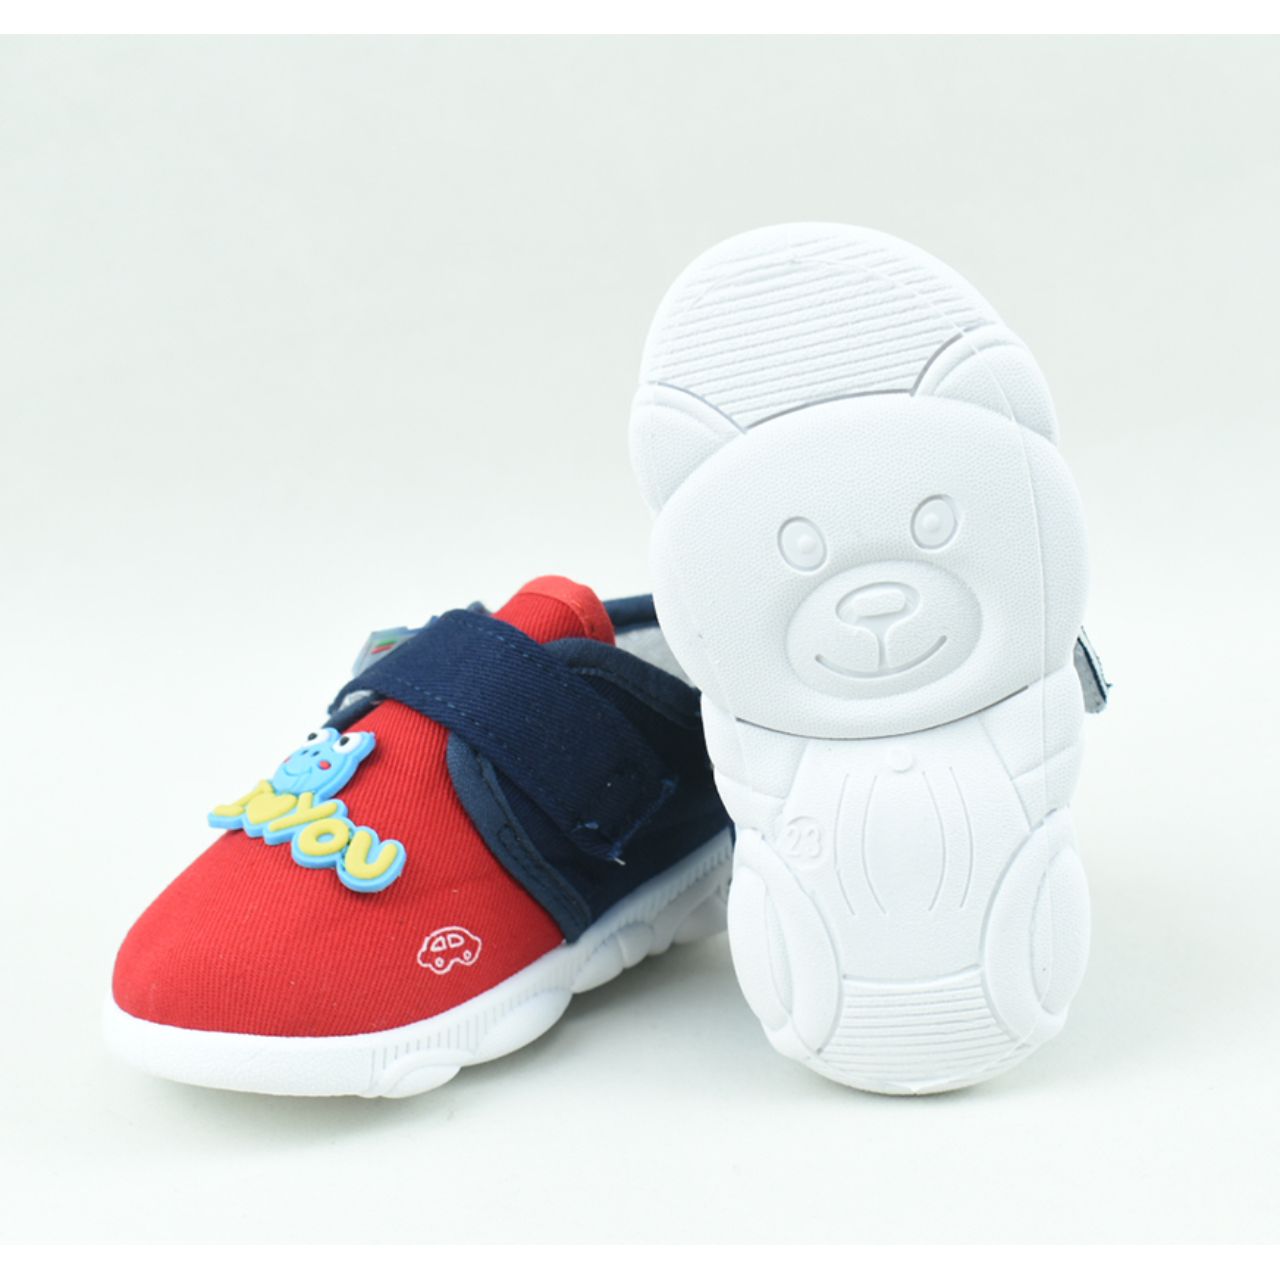 کفش نوزادی مدل قورباغه کد C-8233 -  - 5